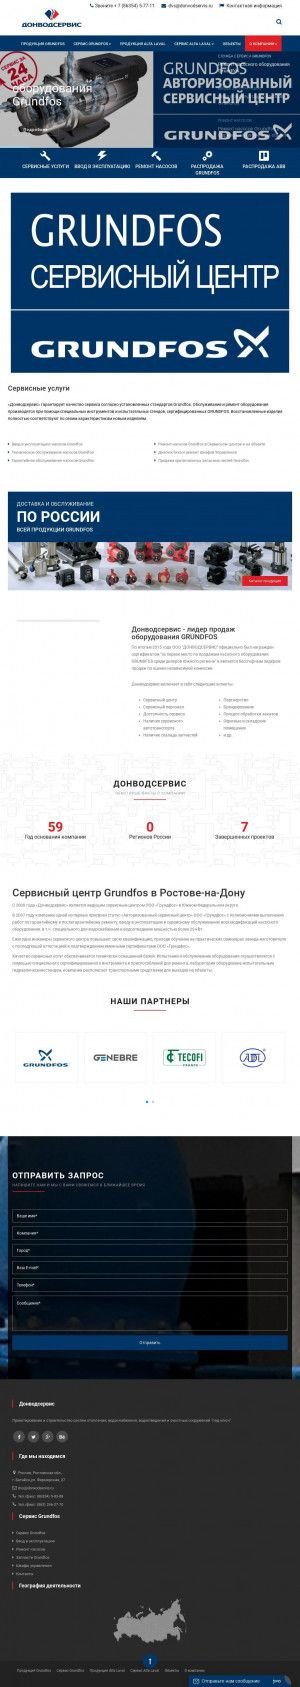 Предпросмотр для www.donvodservis.ru — Донводсервис